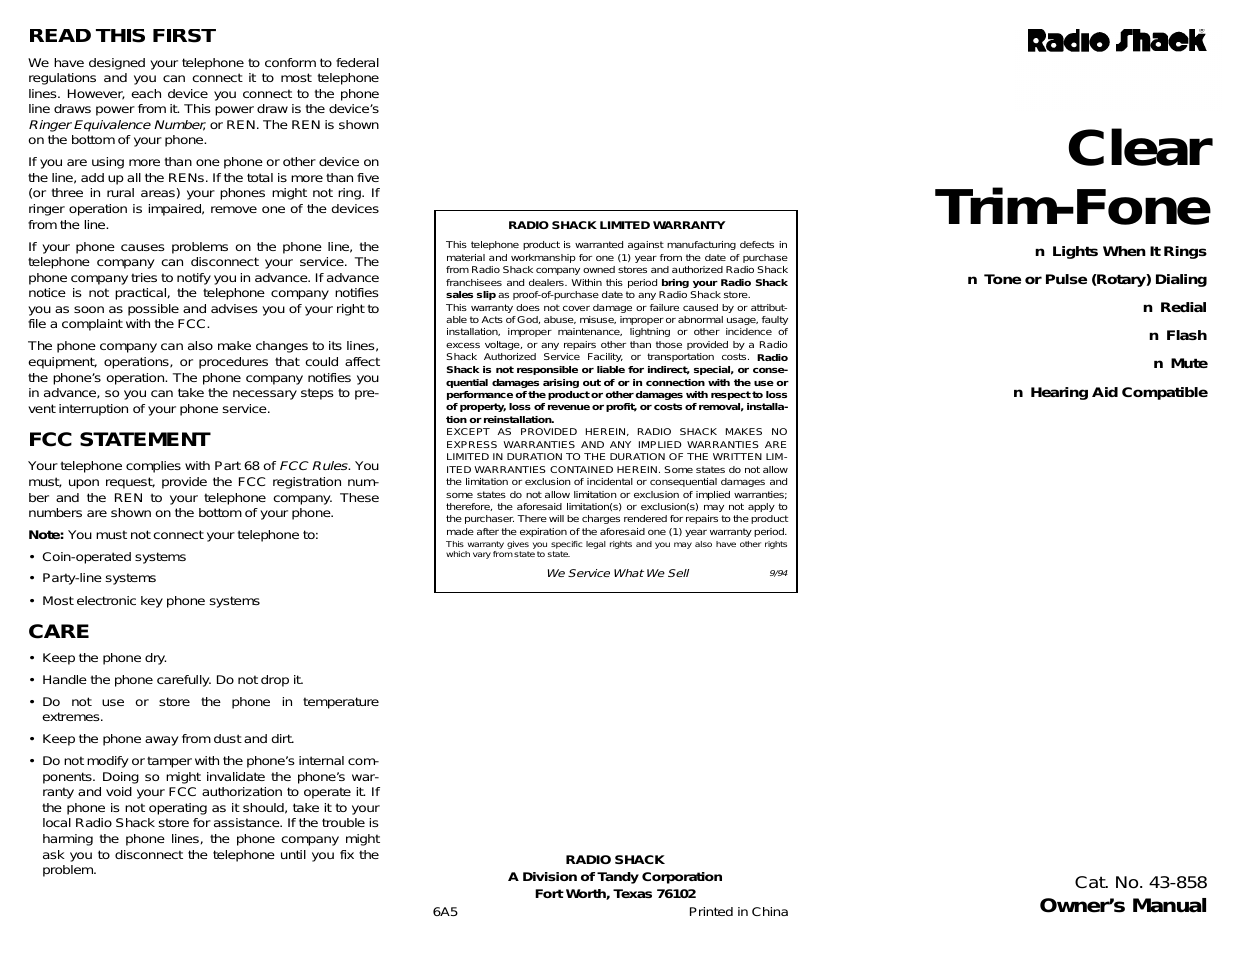 CLEAR TRIM-FONE 43-858